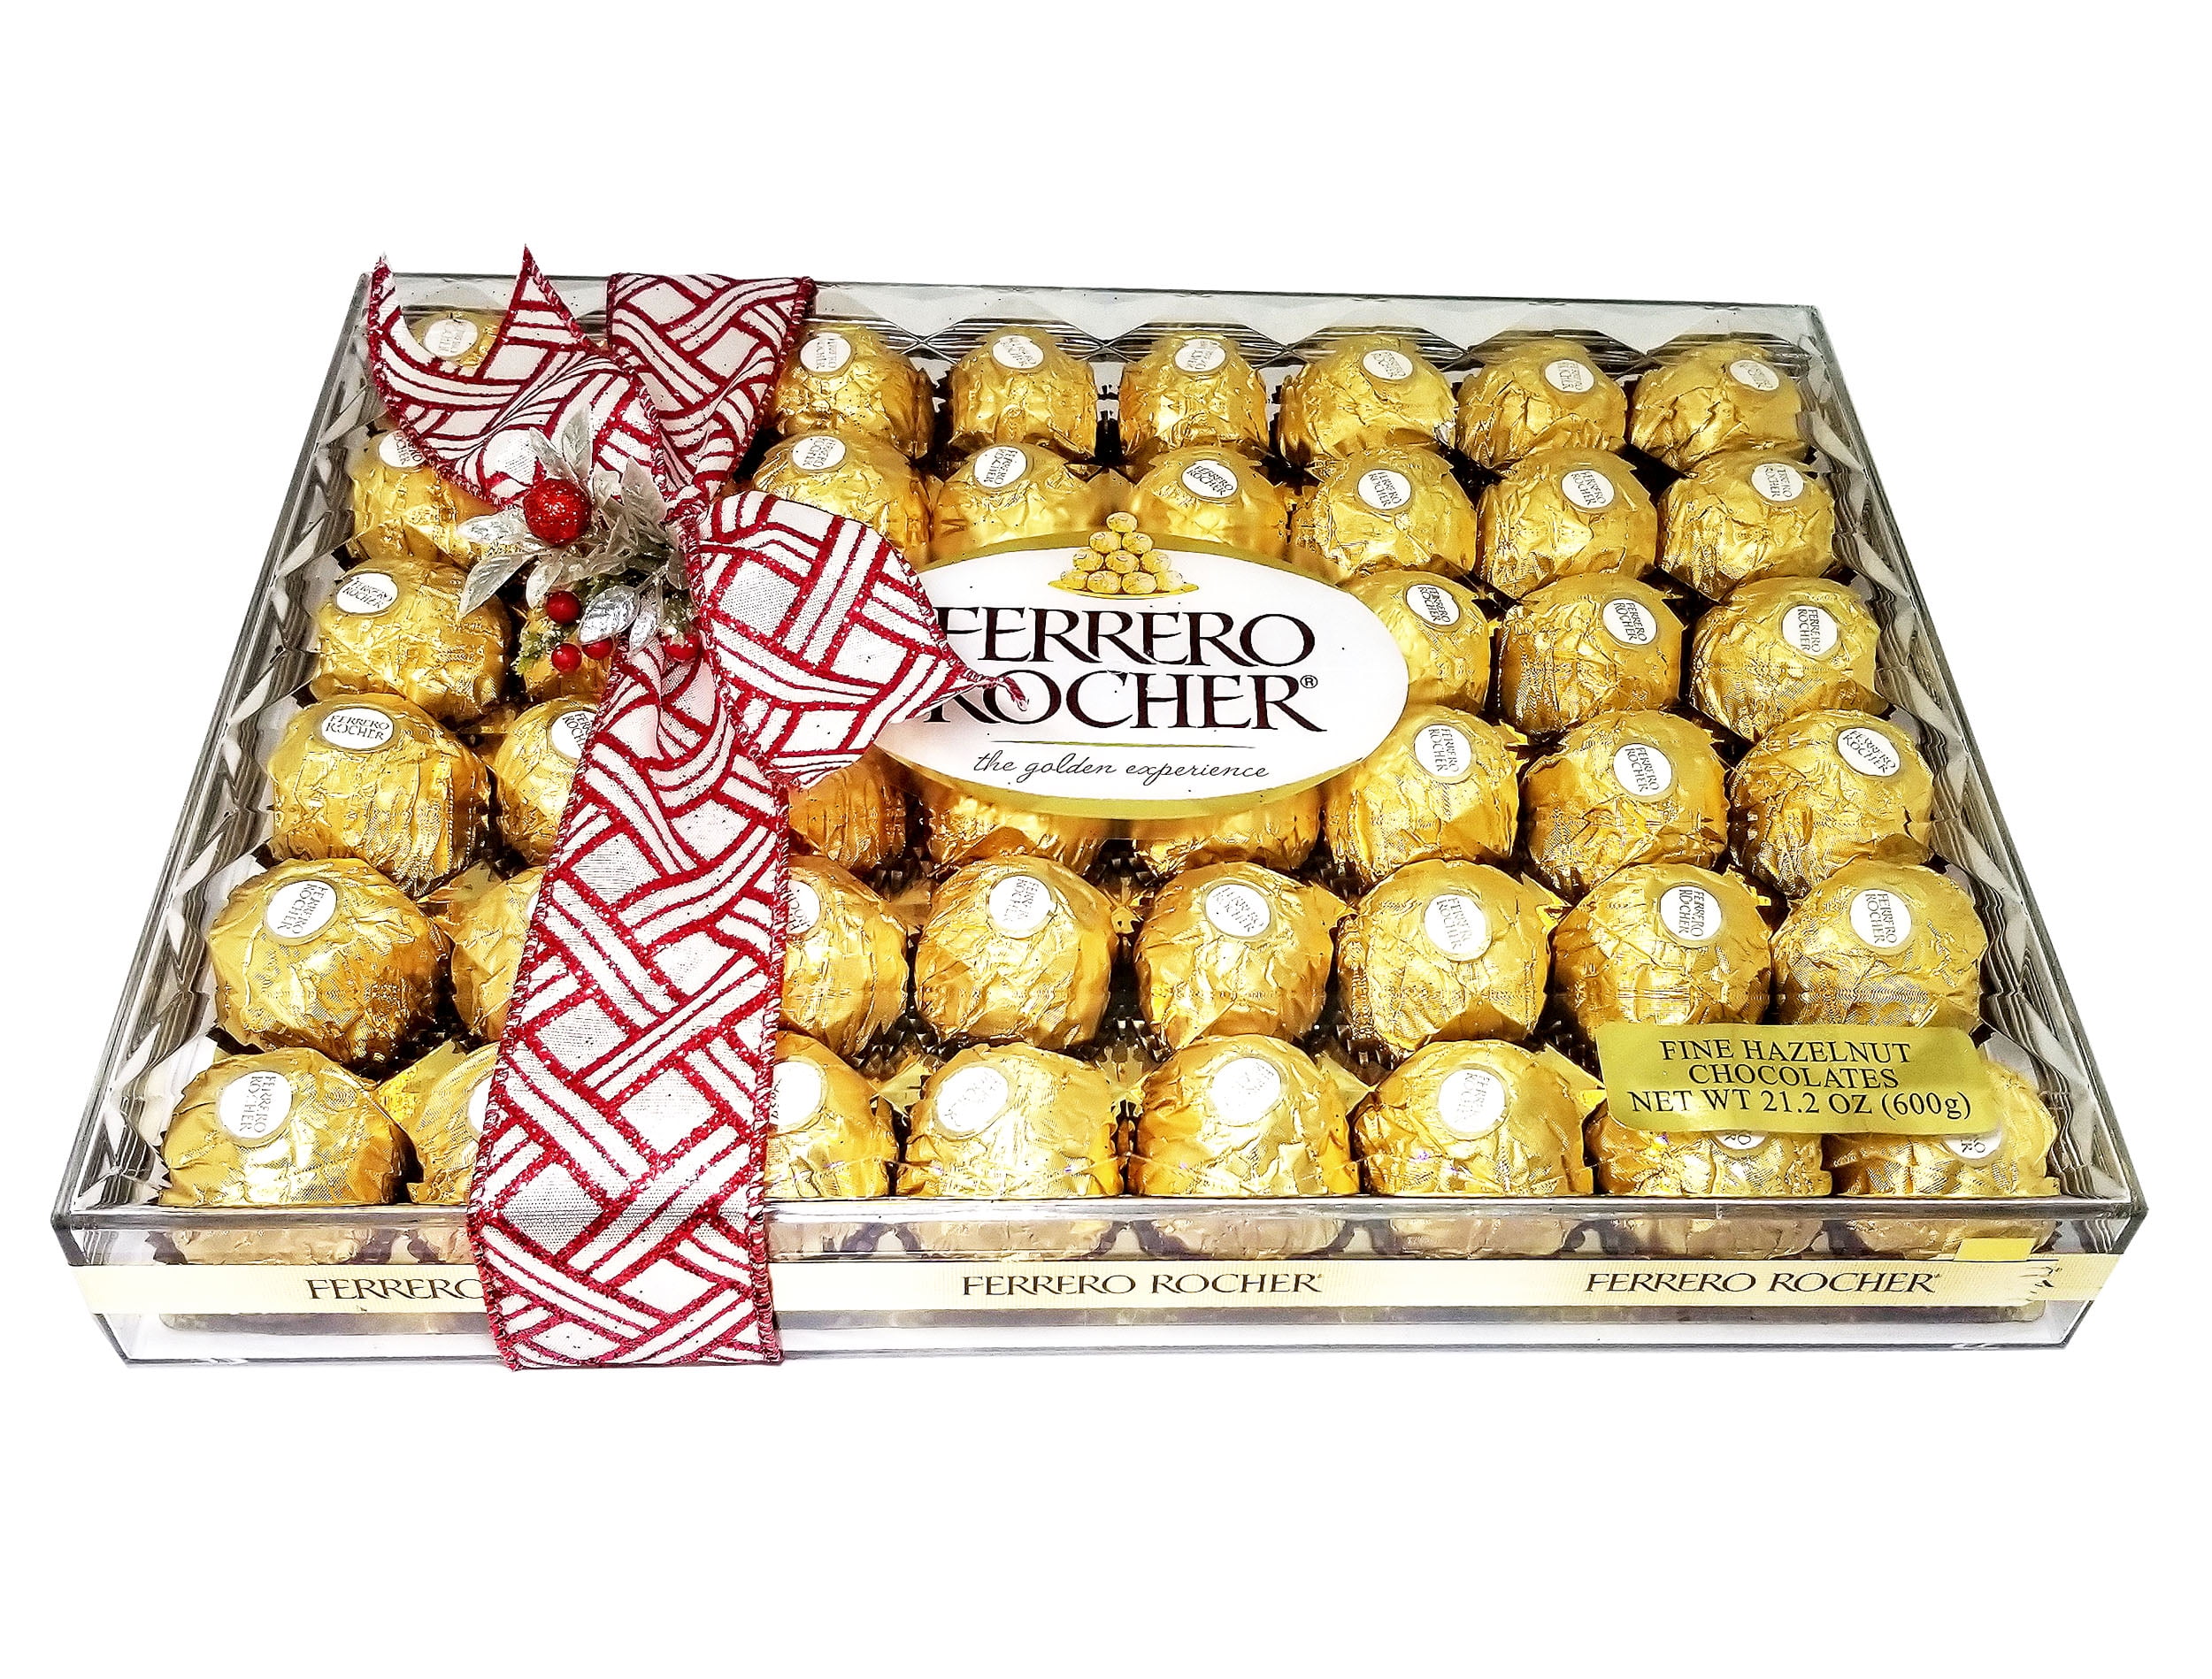  Ferrero Rocher Fine Hazelnut Chocolates, Chocolate Gift Box,  48 Count Flat, 21.2 oz : Grocery & Gourmet Food